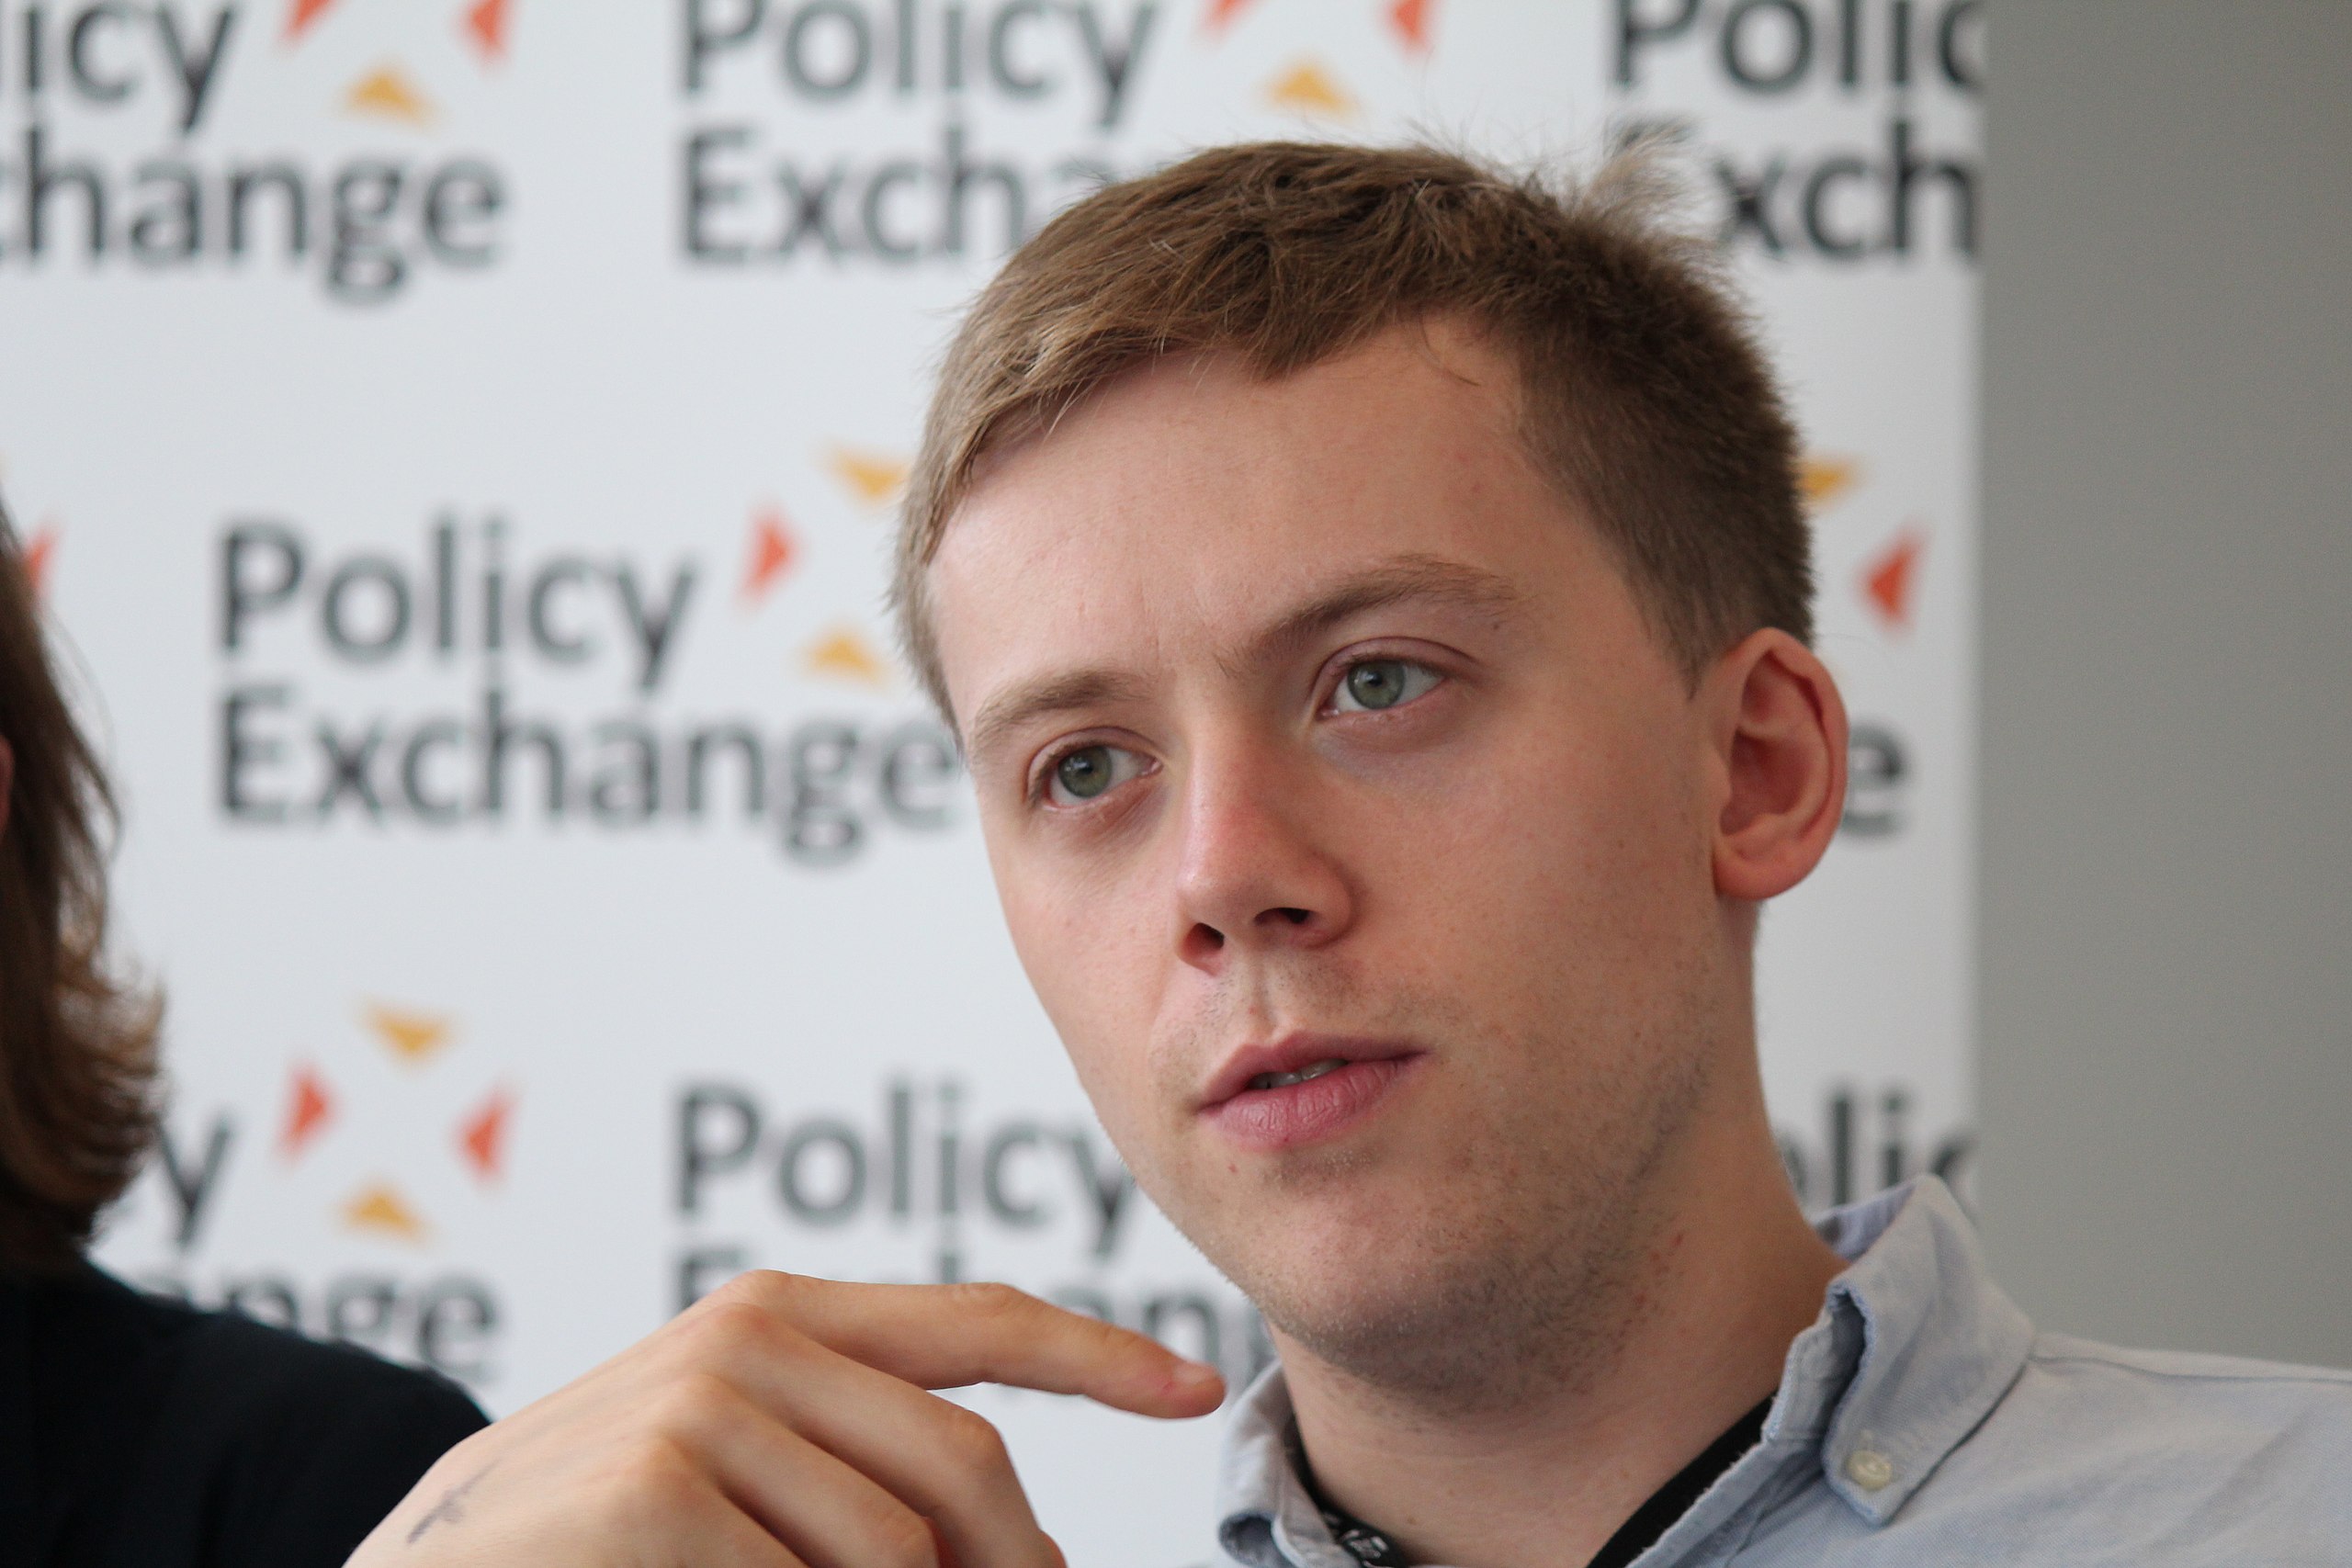 Owen Jones speaking at Policy Exchange in 2013